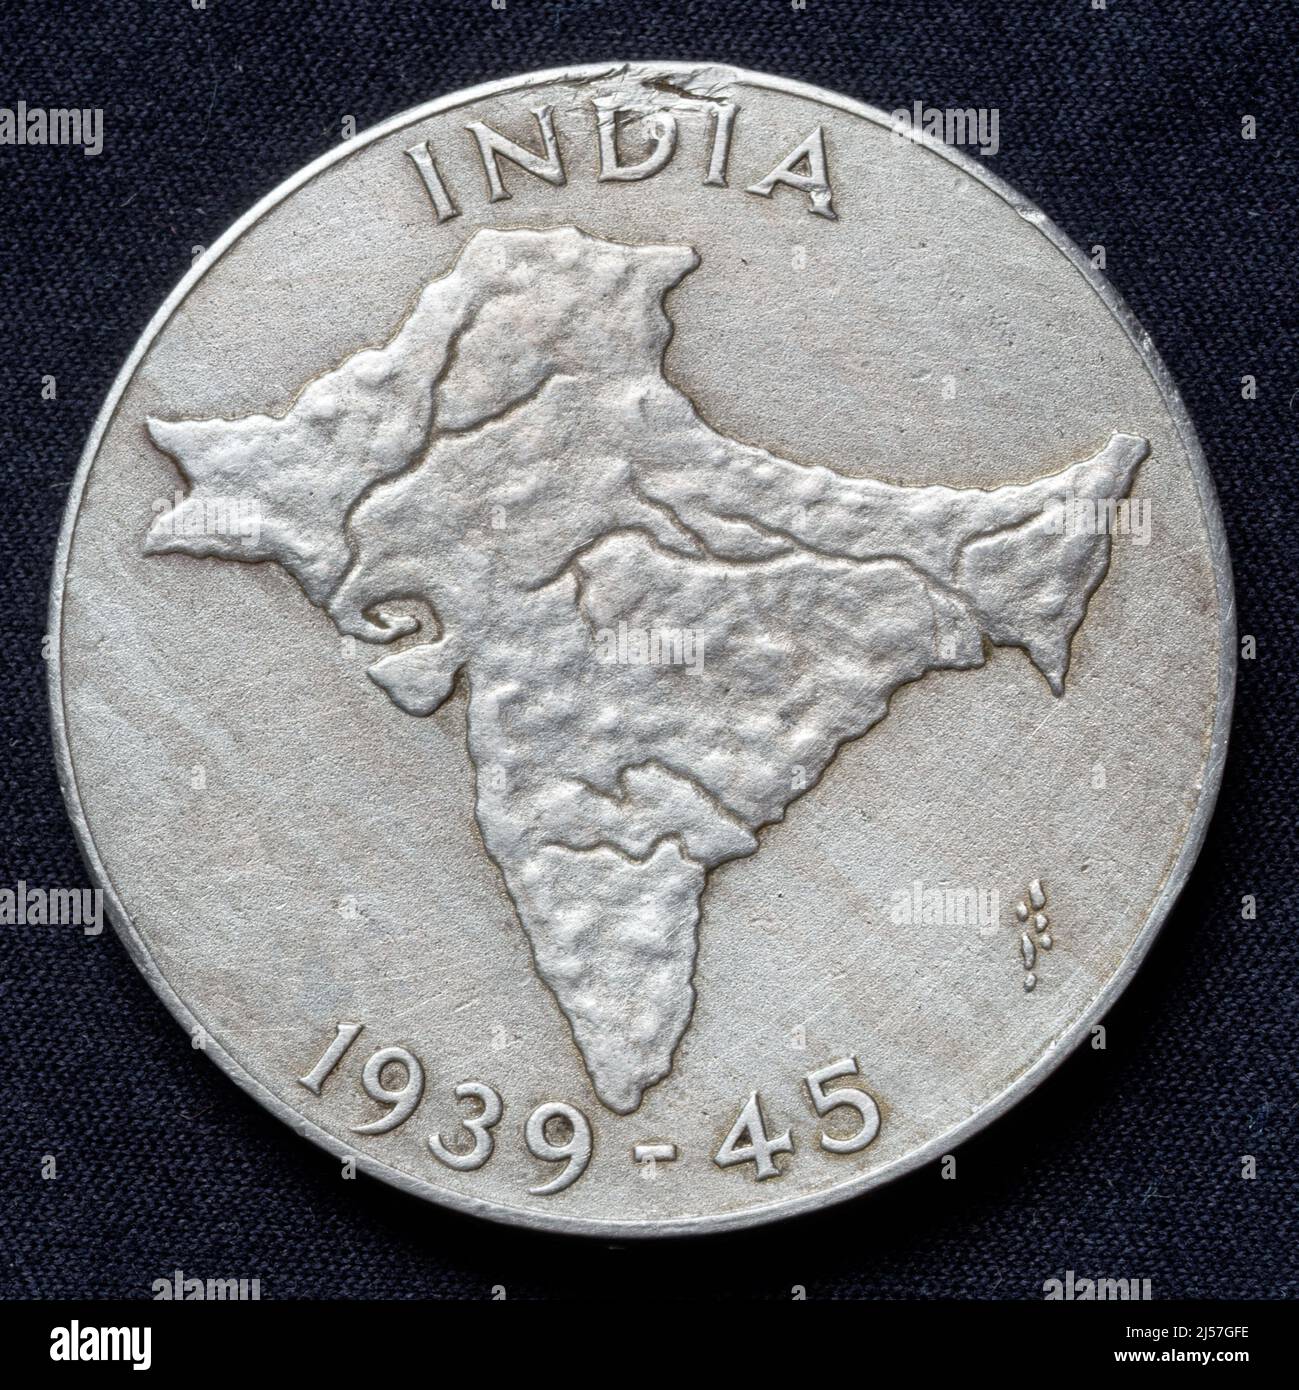 Indien: India Service Medal 1939 - 1945 (Rückseite), verliehen an indische Streitkräfte für mindestens 3 Jahre nicht-operativen Dienst in Indien zwischen September 1938 und September 1945. Diese Seite zeigt eine Reliefkarte von Indien. Stockfoto